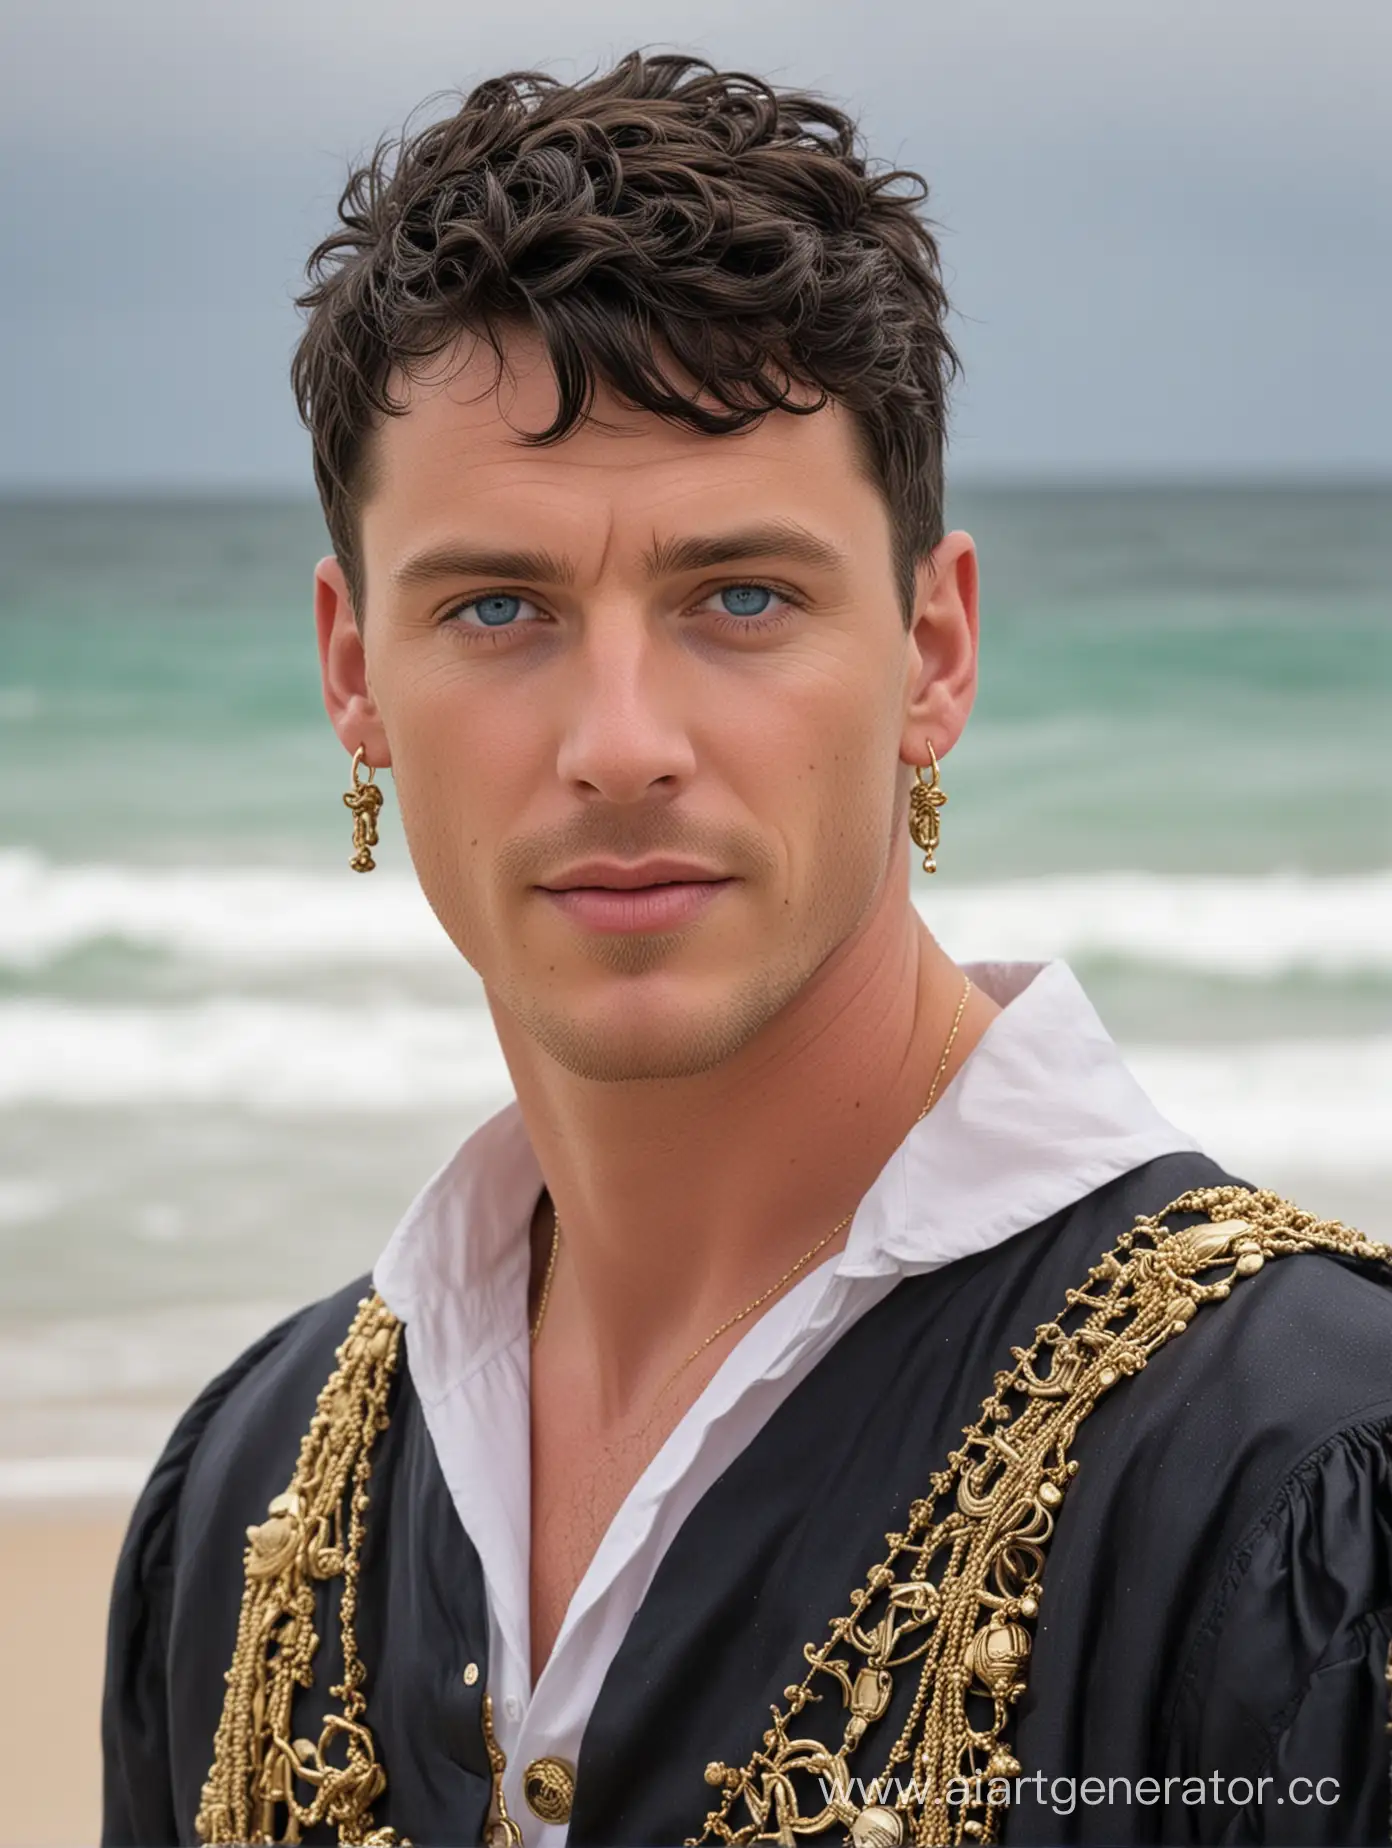 белый мужчина с чёрными короткими волнистыми  волосами, голубыми глазами, с золотой серьгой в правом ухе, в пиратской одежде, стоит на пляже